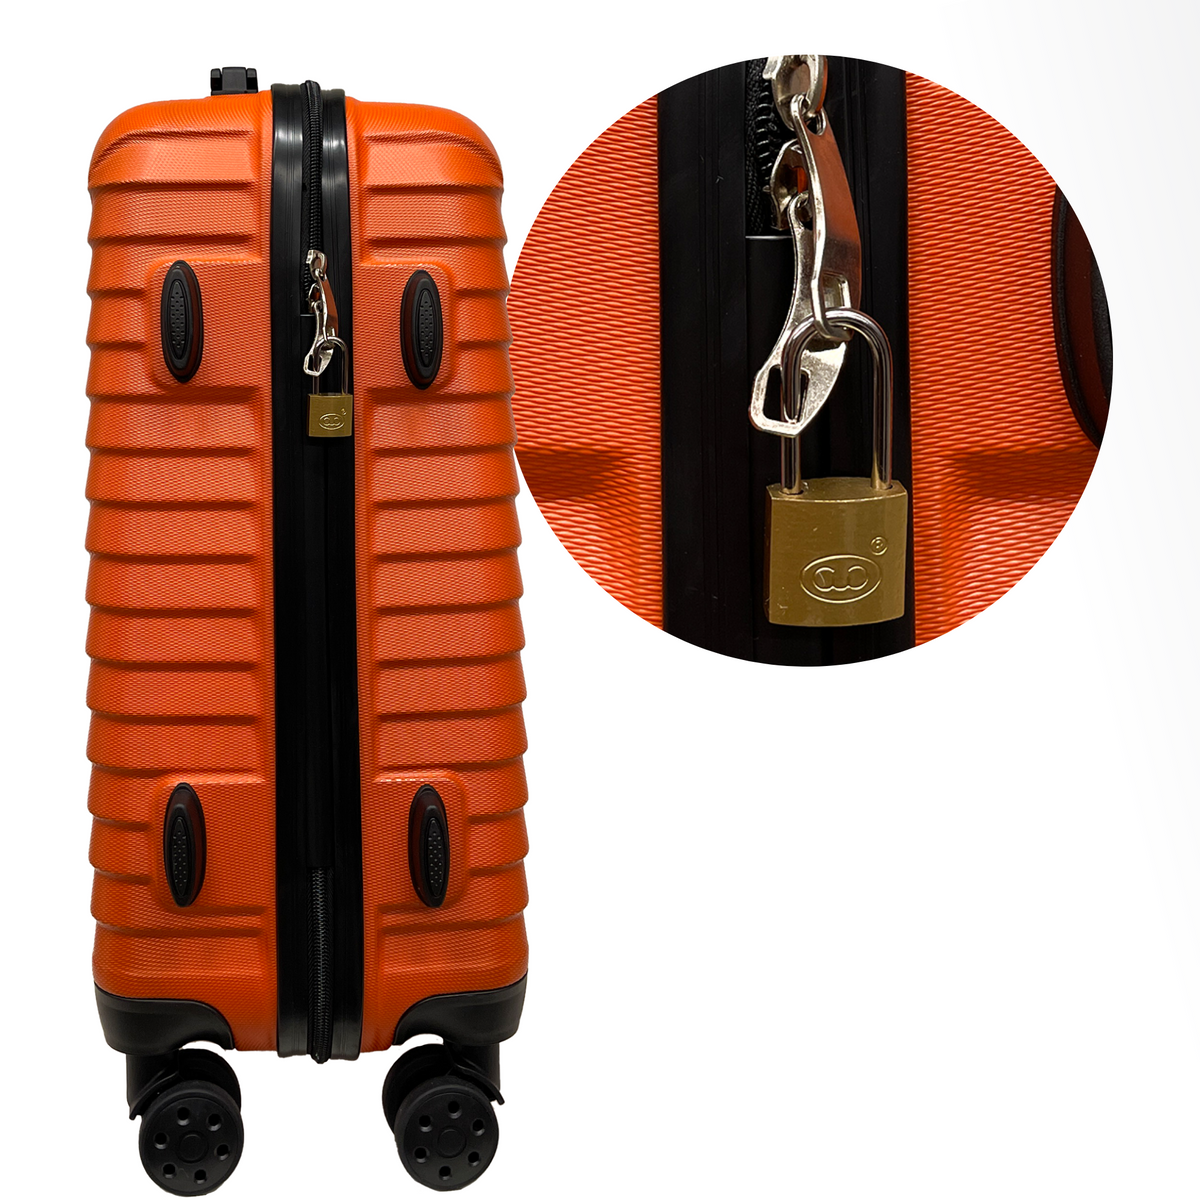 Κλειδαριά μήκους 20 χιλιοστών με 2 κλειδιά - Ασφάλεια για βαλίτσες, αποσκευές, τσάντα ταξιδιού και σακίδια